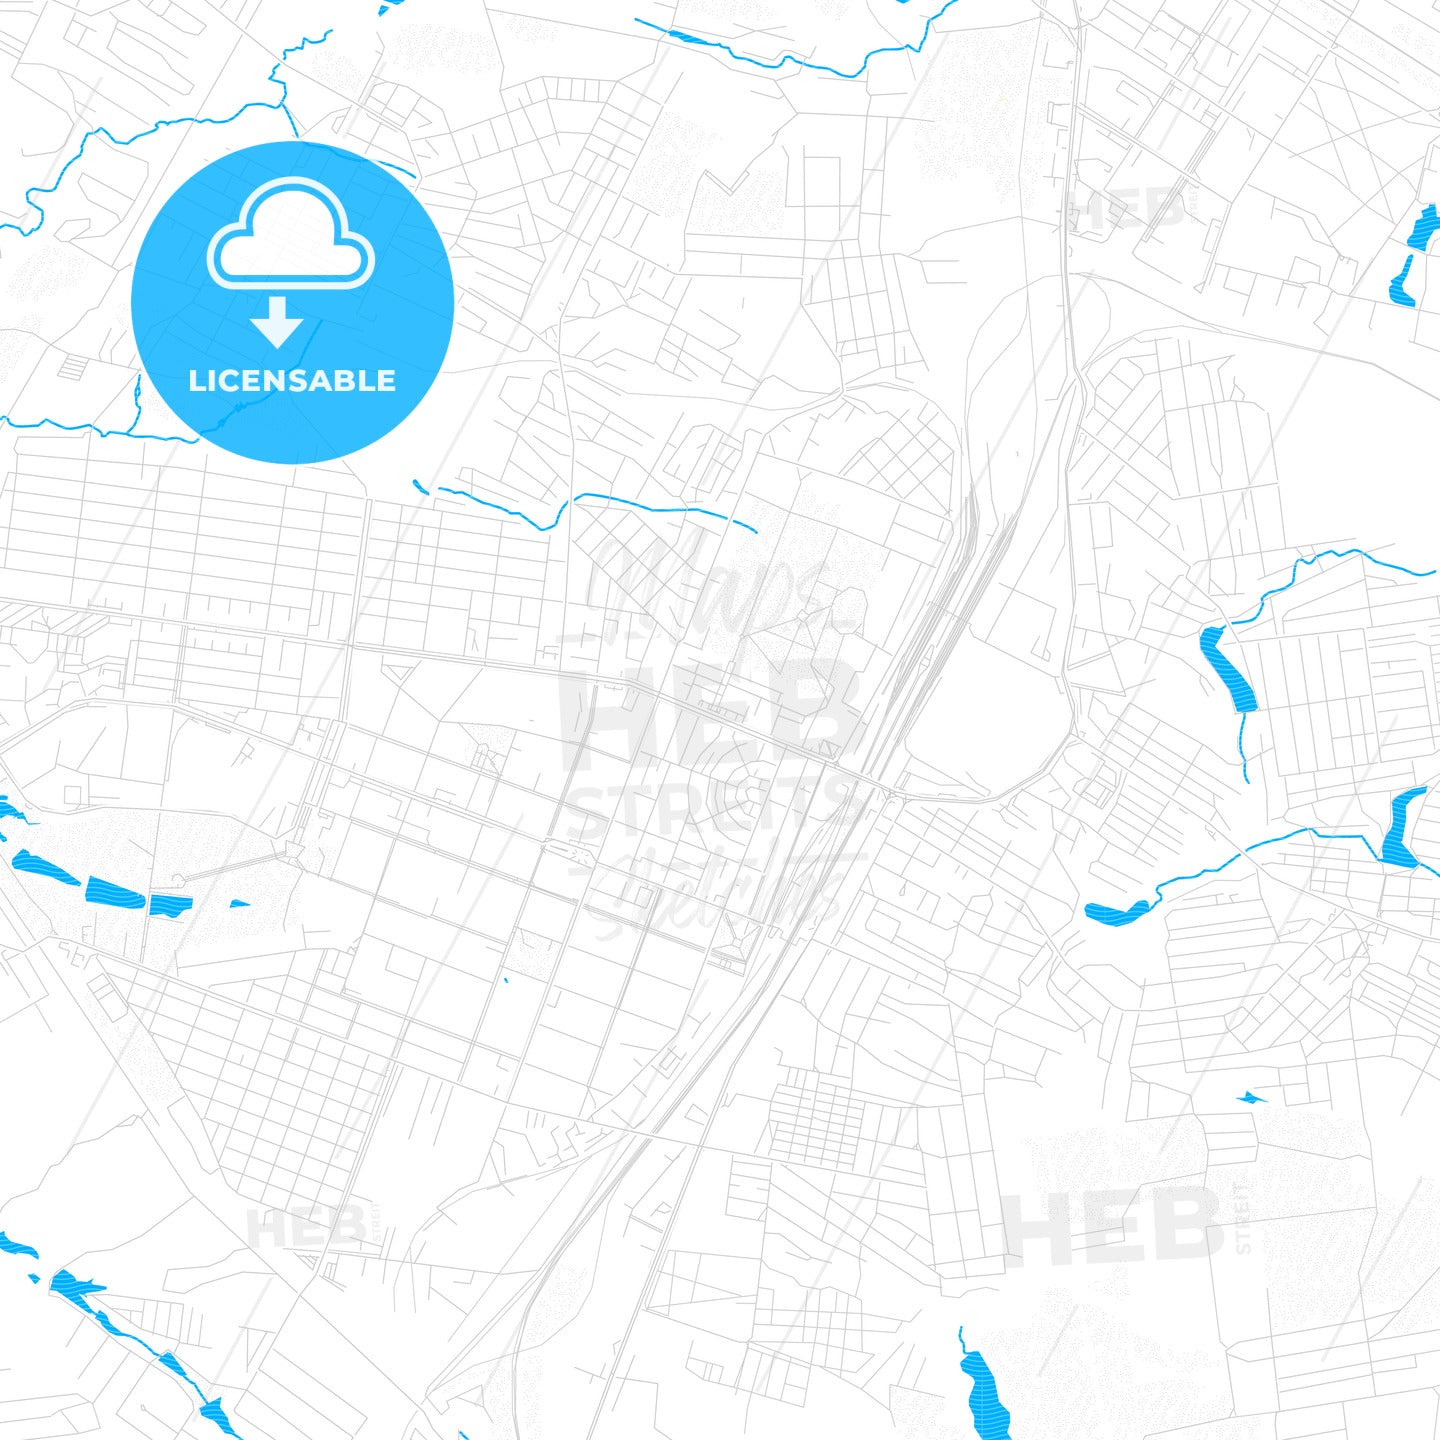 Horlivka, Ukraine PDF vector map with water in focus